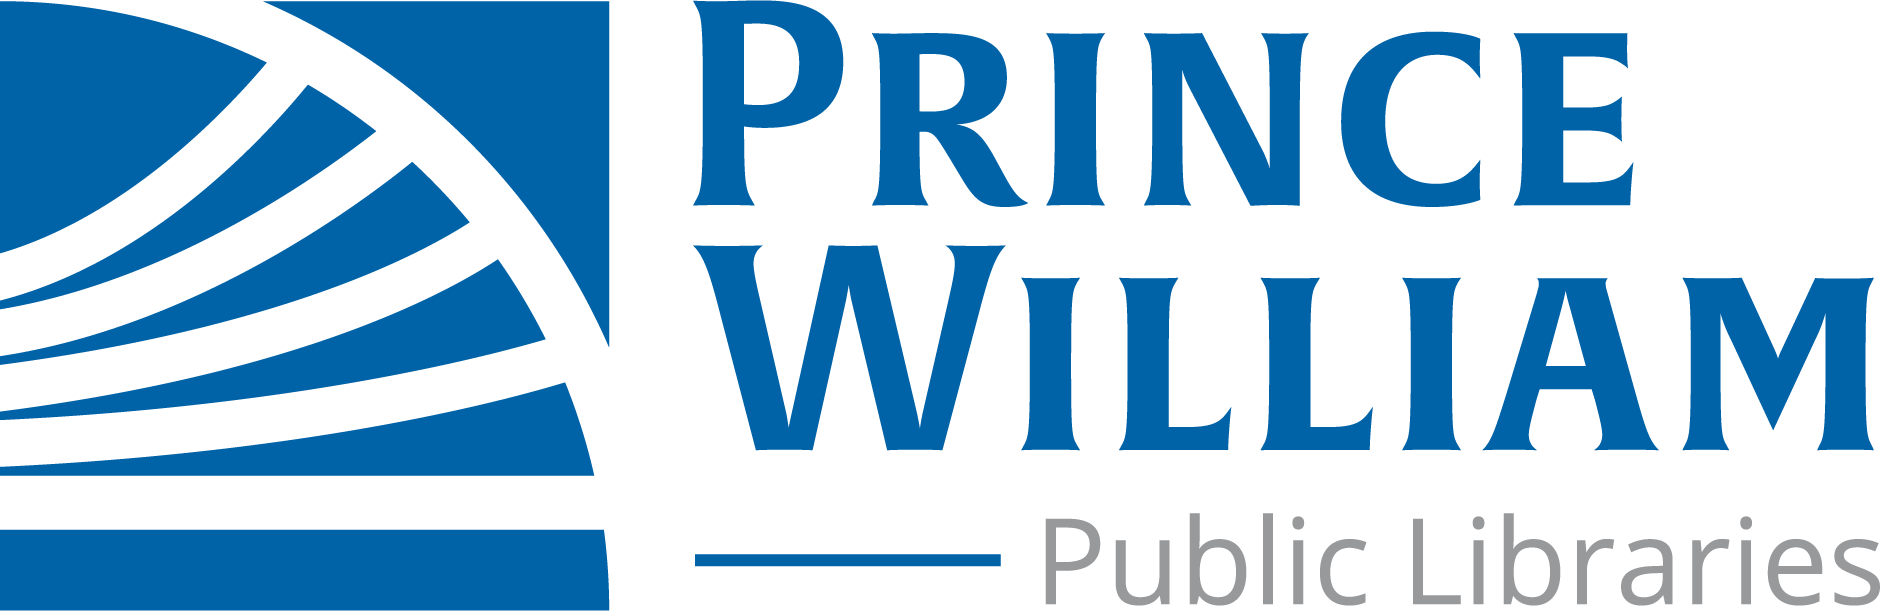 Prince William Public Libraries Logo